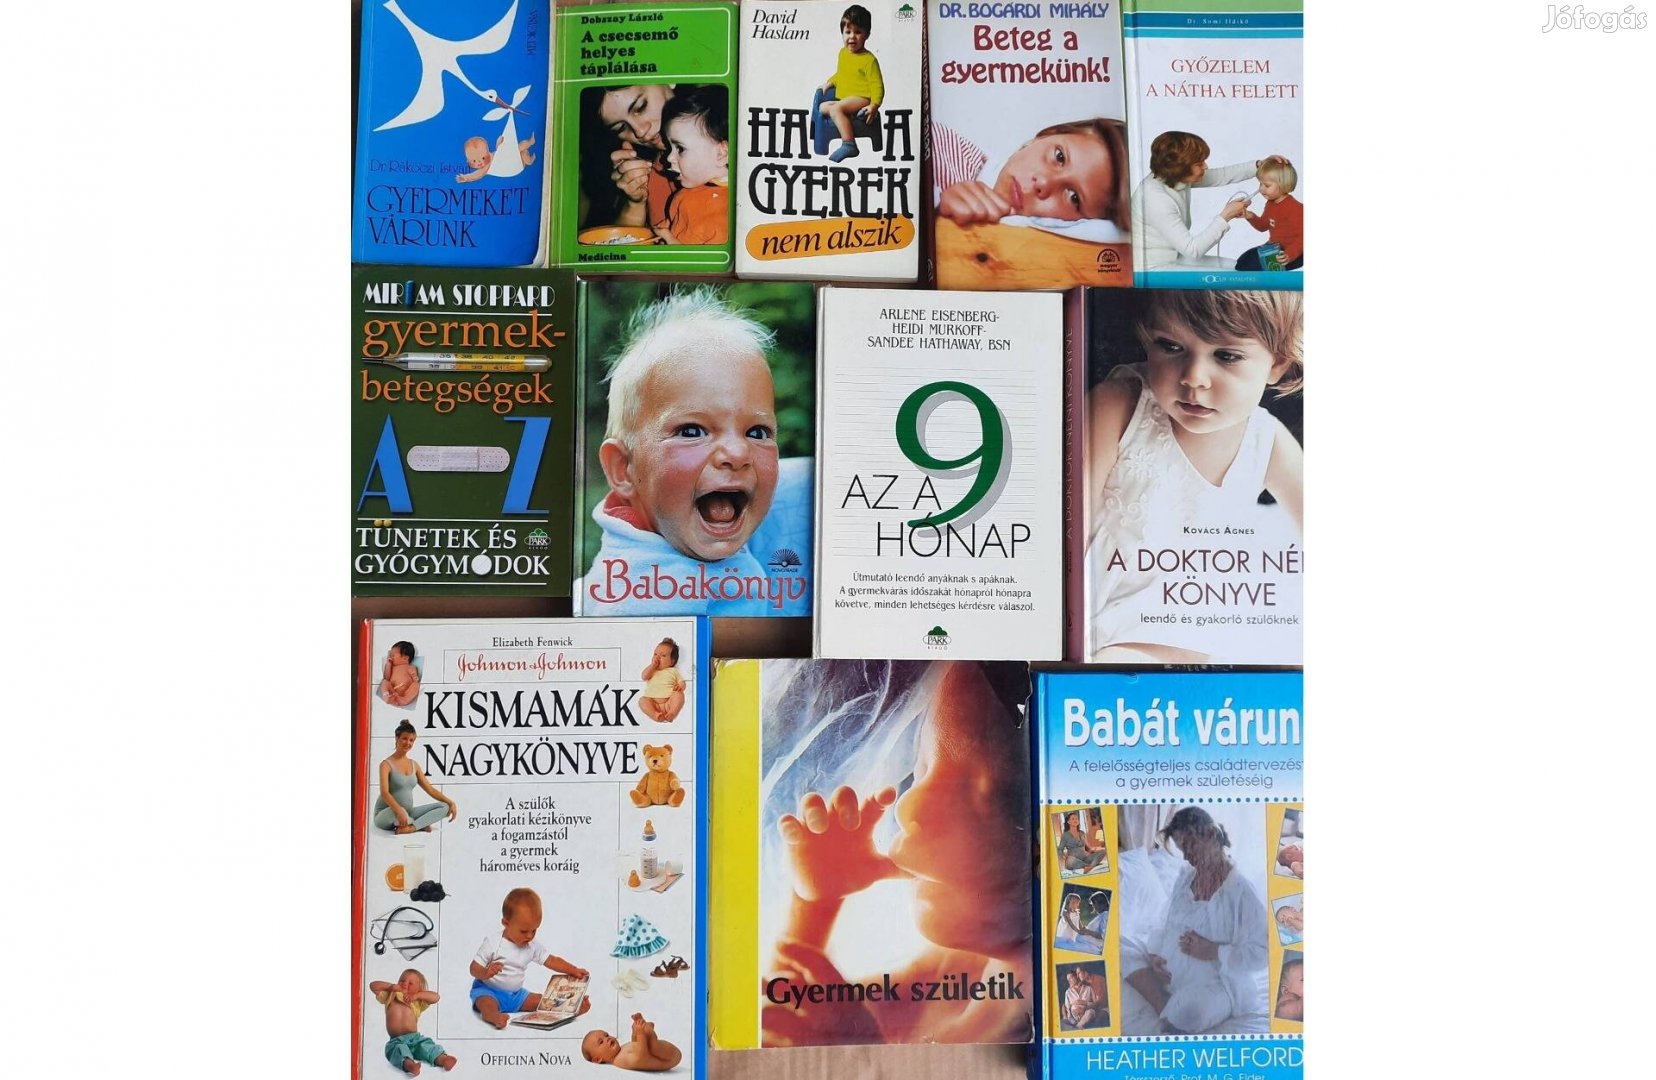 Babakönyv, Gyermekbetegségek, Babát várunk stb eladó